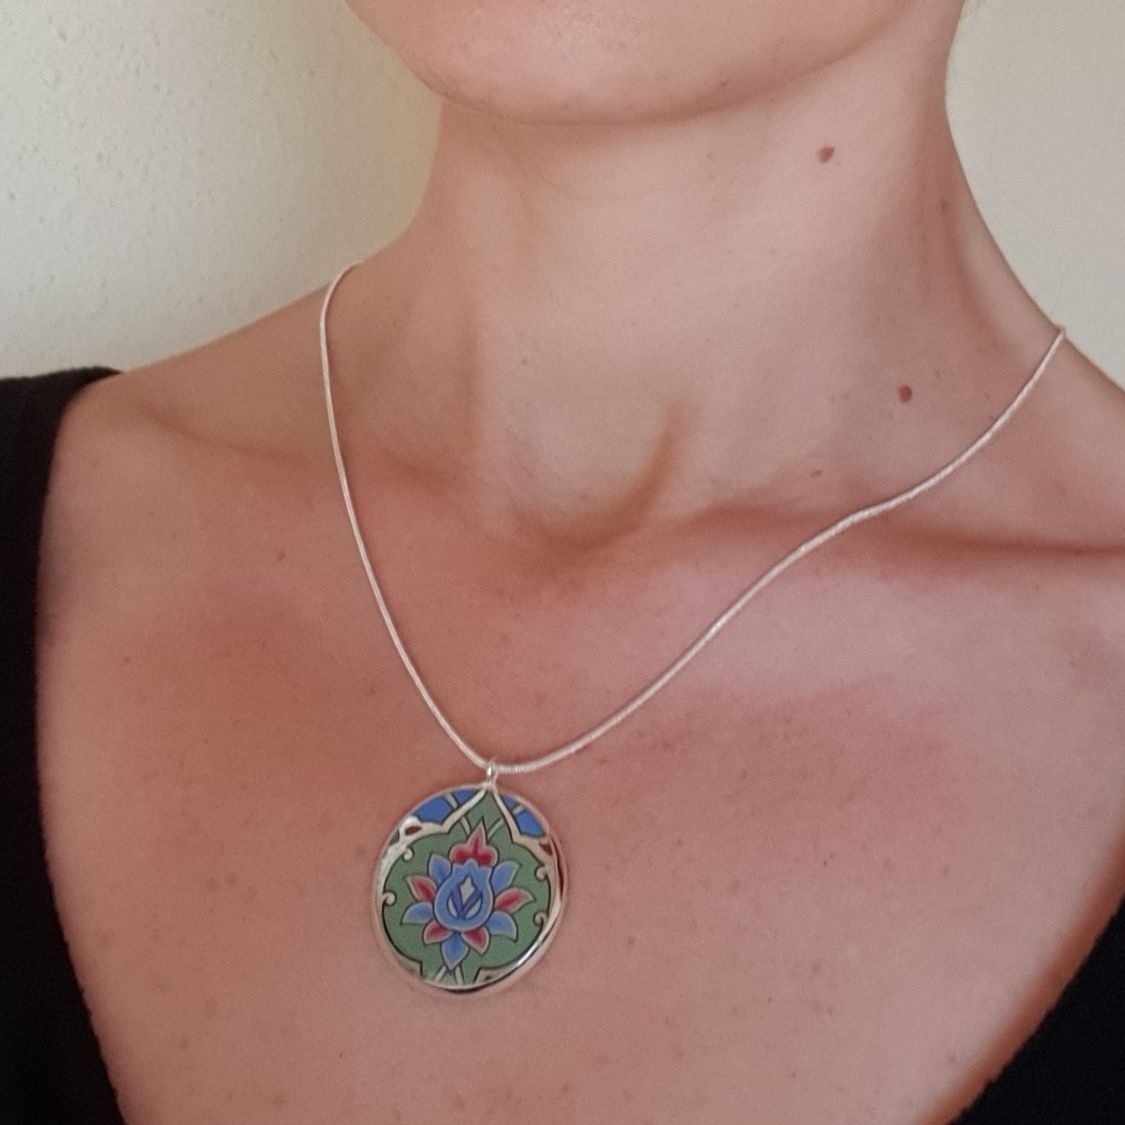 Collier pendentif fleur et arabesques vert/argenté/bleu/rosé sur chaîne argentée